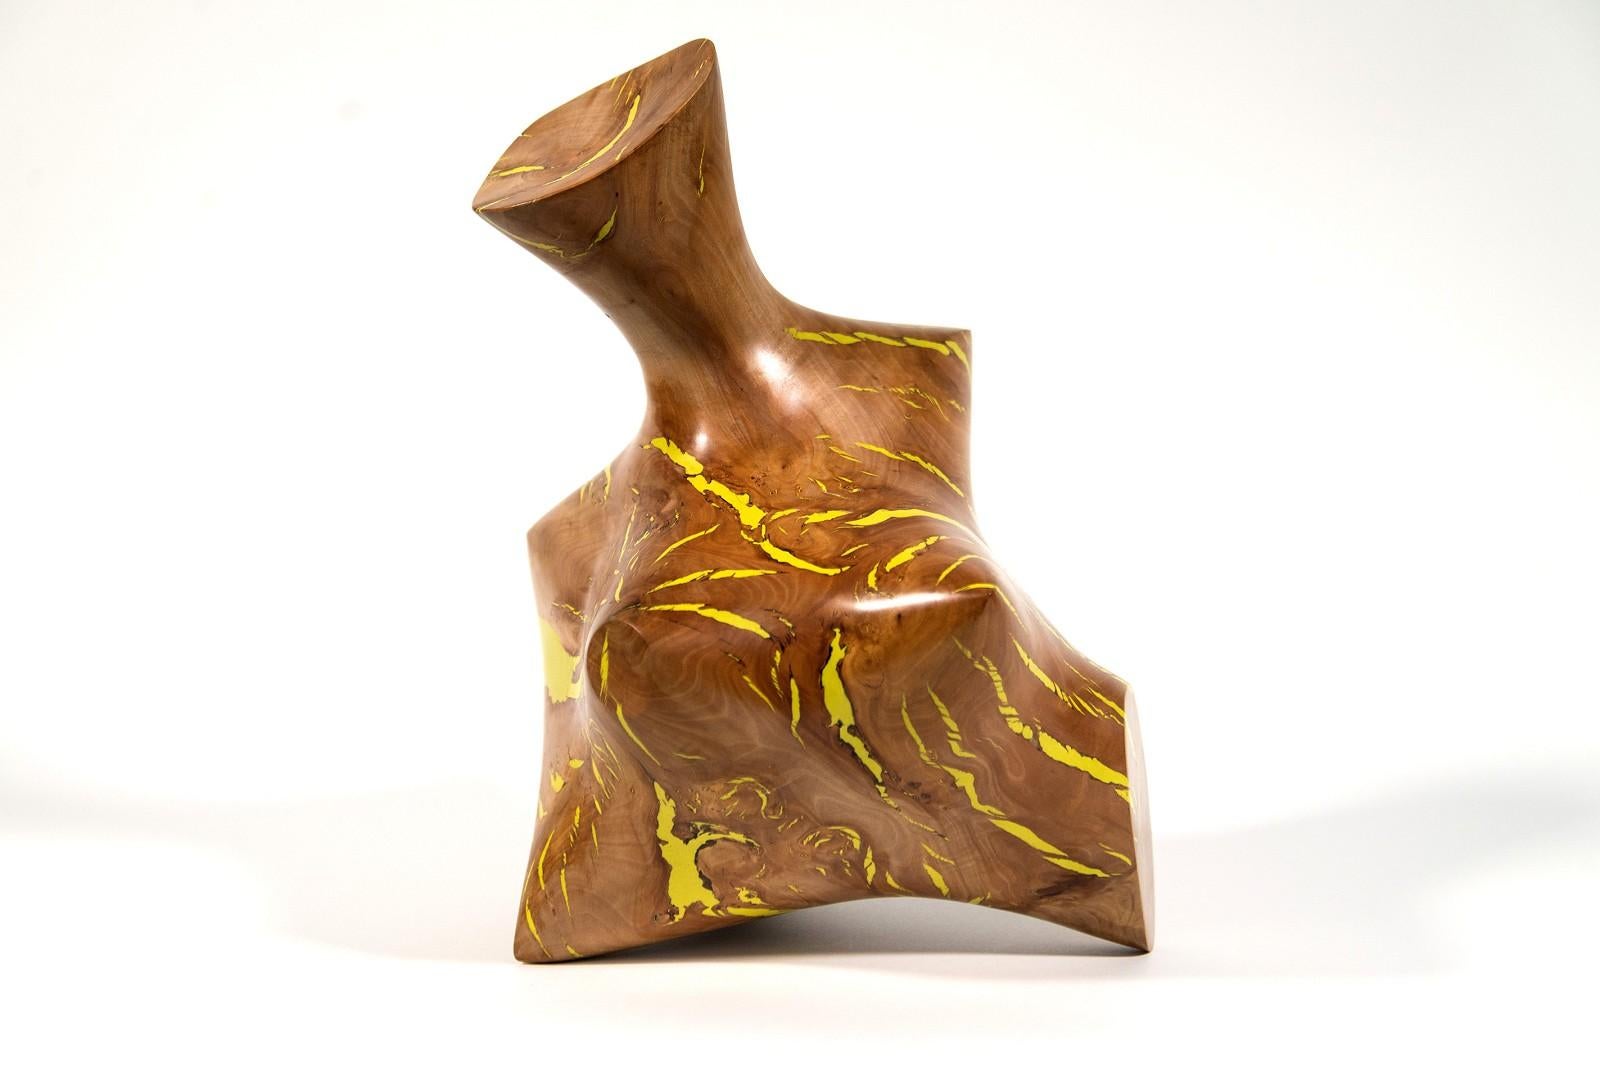 Série Windfall II n° 1 - sculpture lisse, sculptée, abstraite, en bois de pomme et résine - Sculpture de Shayne Dark